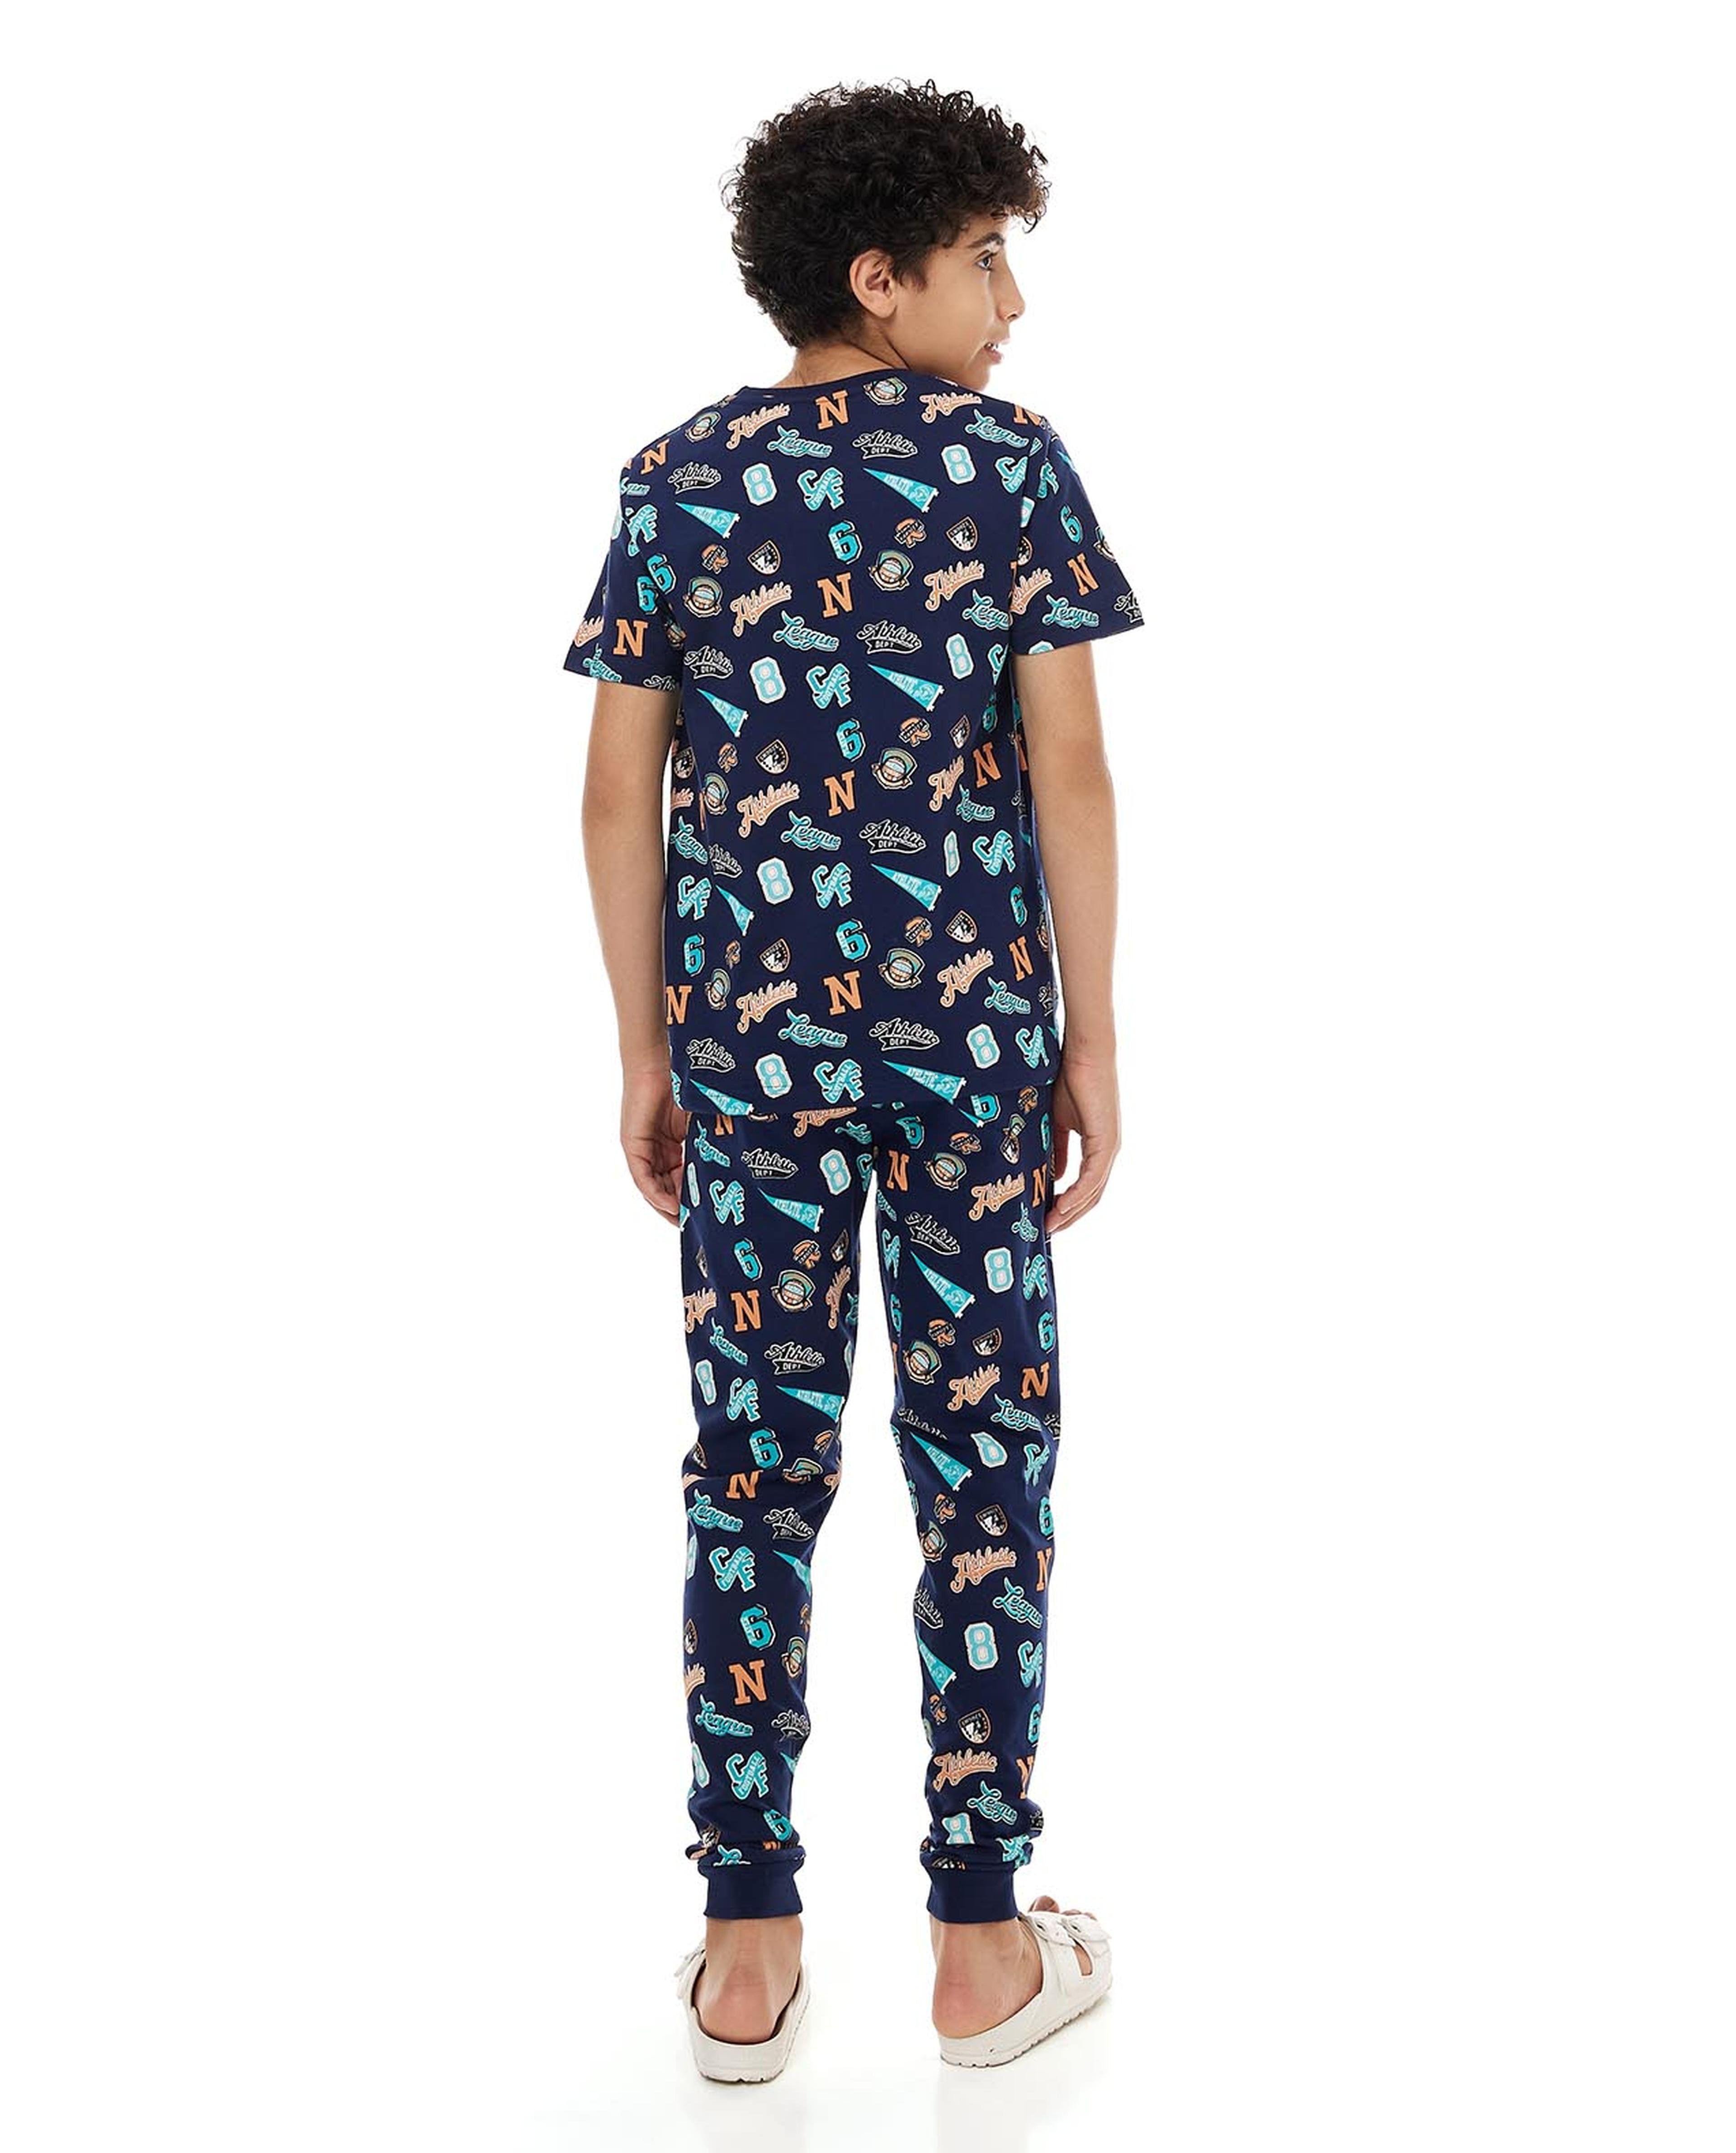 All Over Printed Pyjama Set